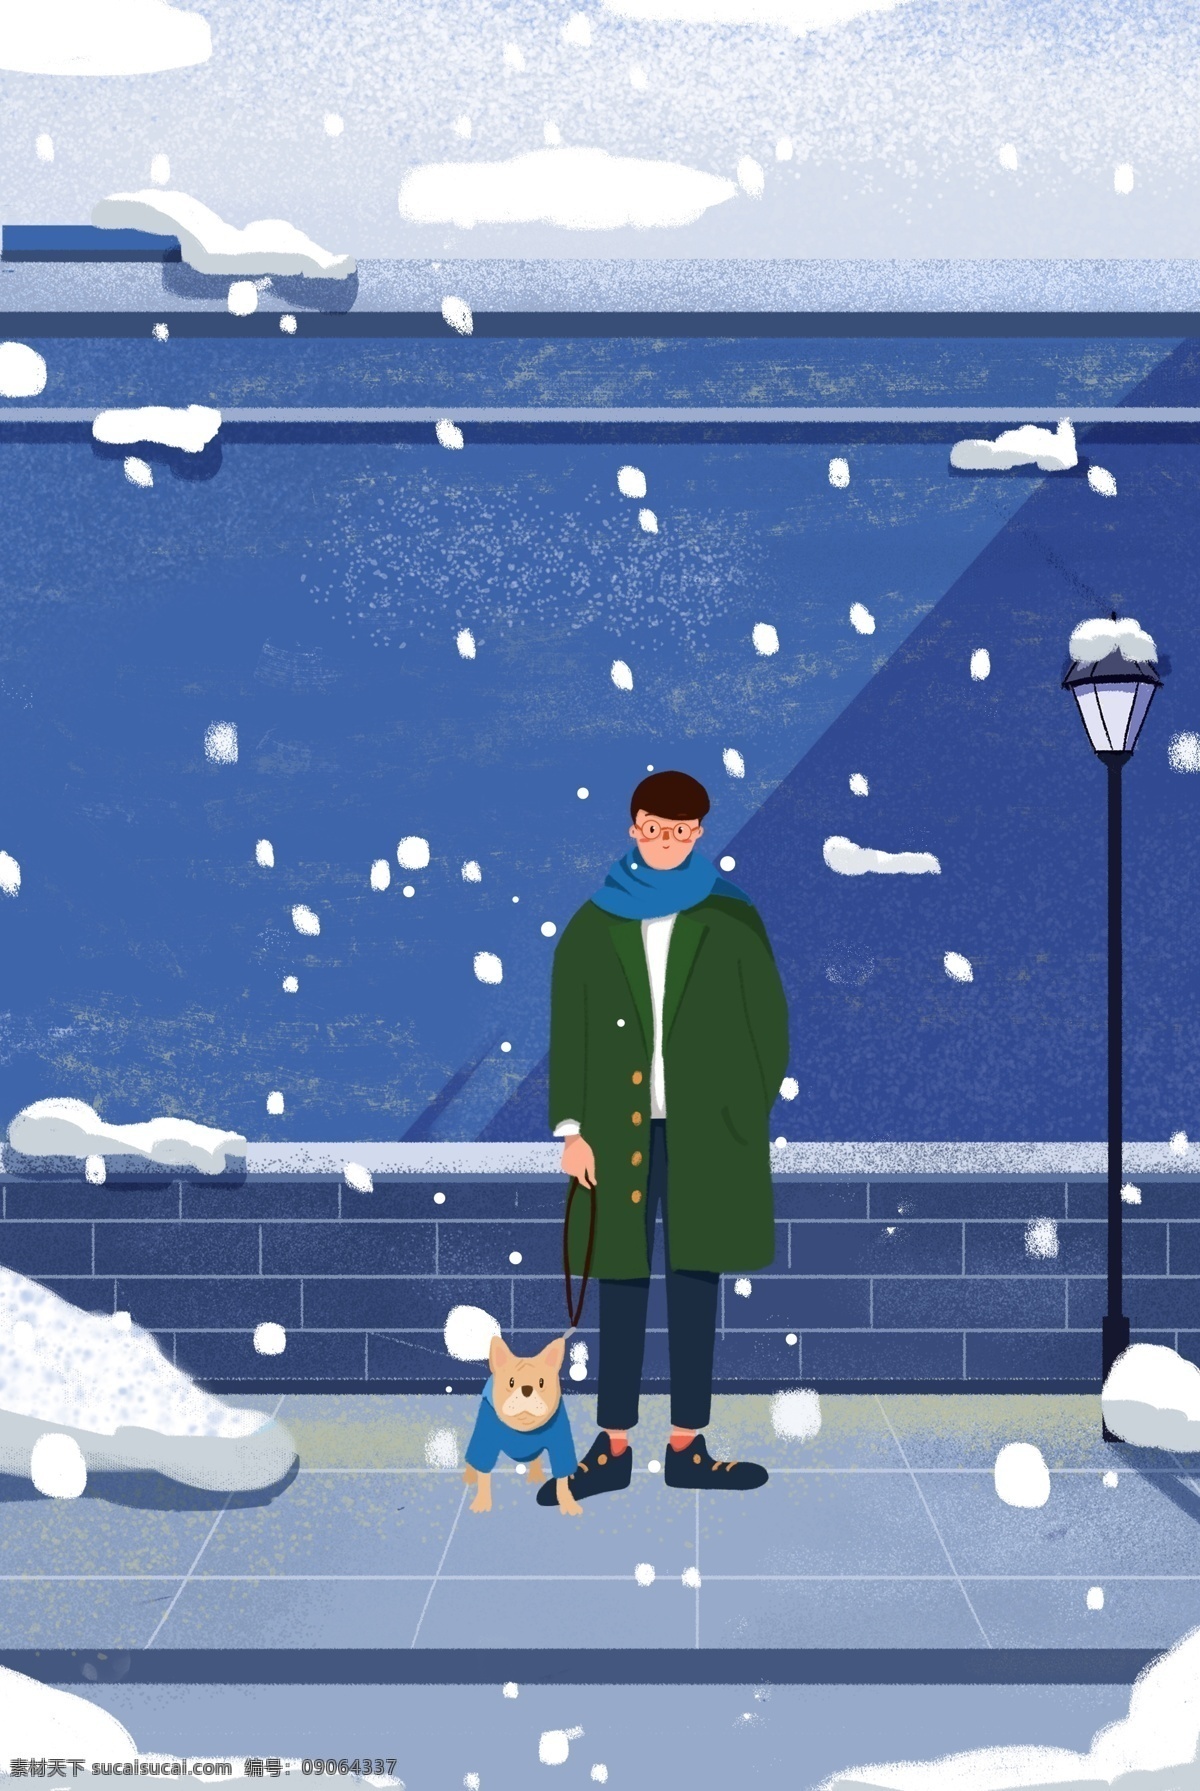 冬日 夜晚 街道 时尚 男孩 服装 促销 海报 冬天 下雪 动物 路灯 插画风 促销海报